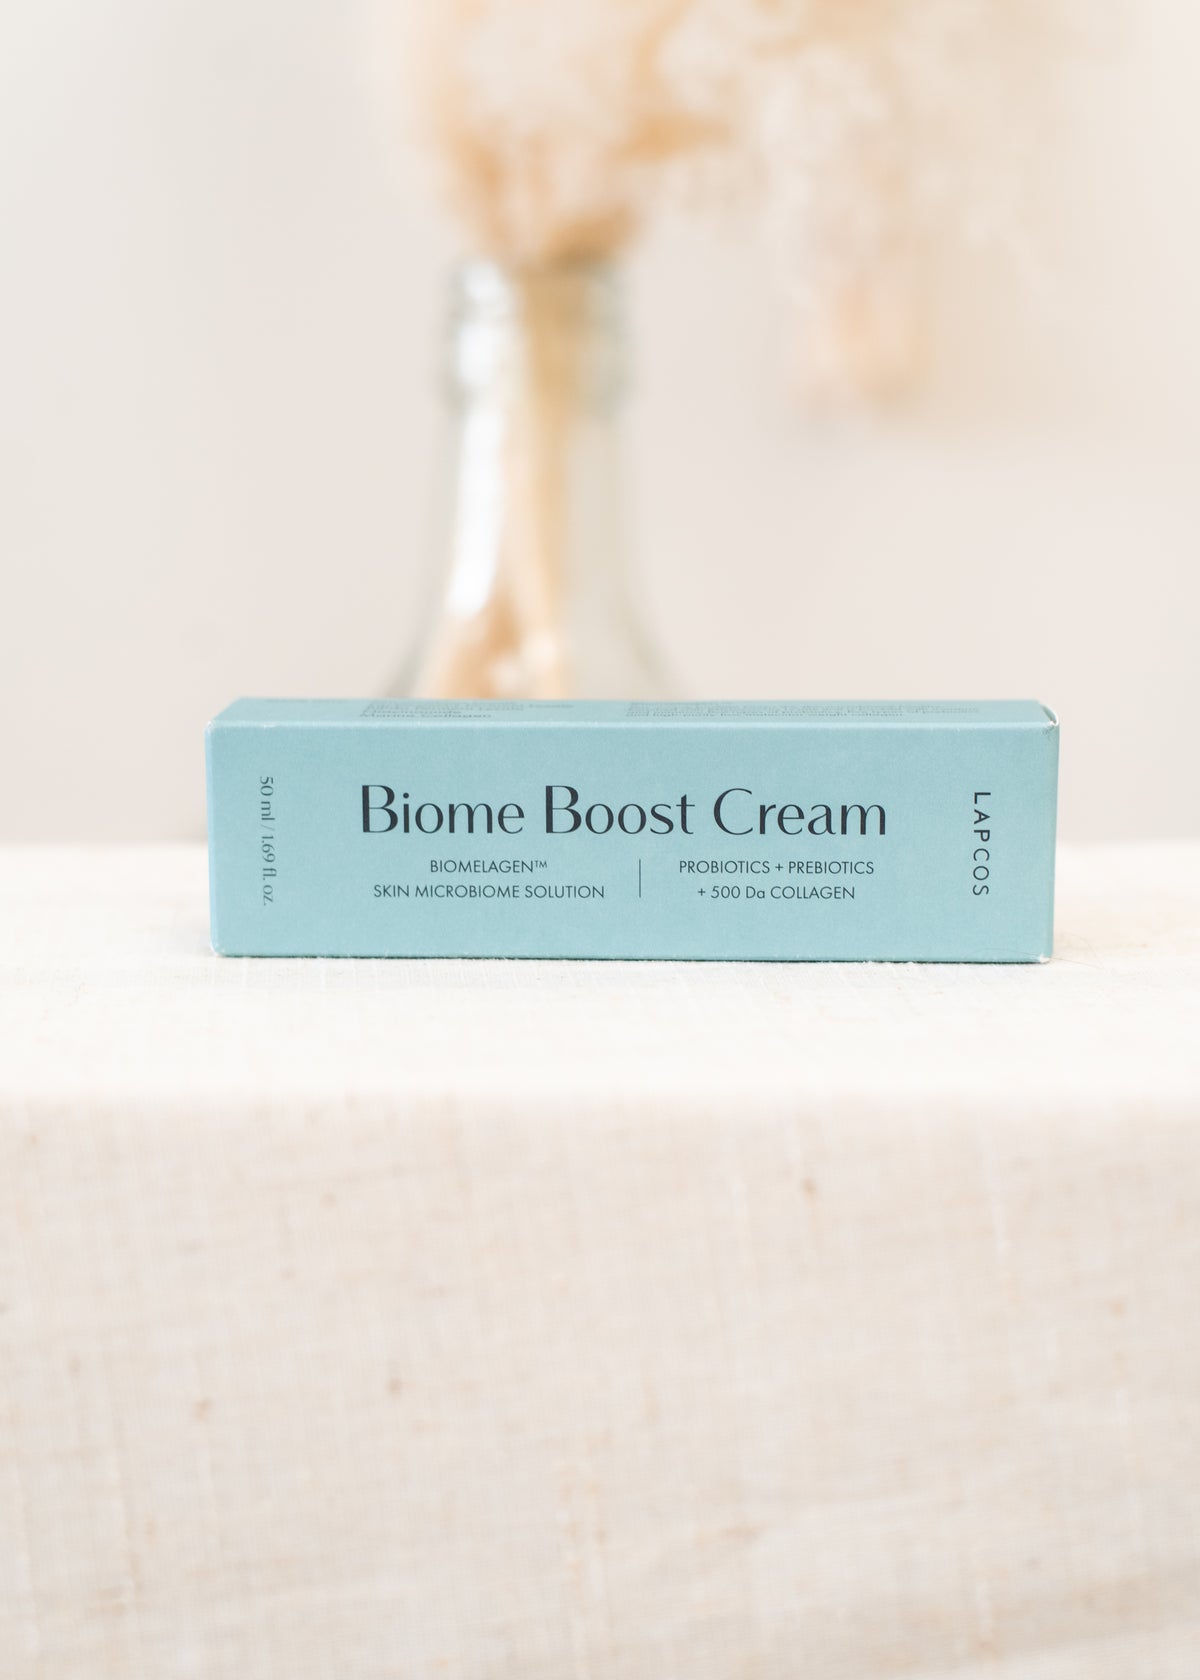 The Biome Boost Cream